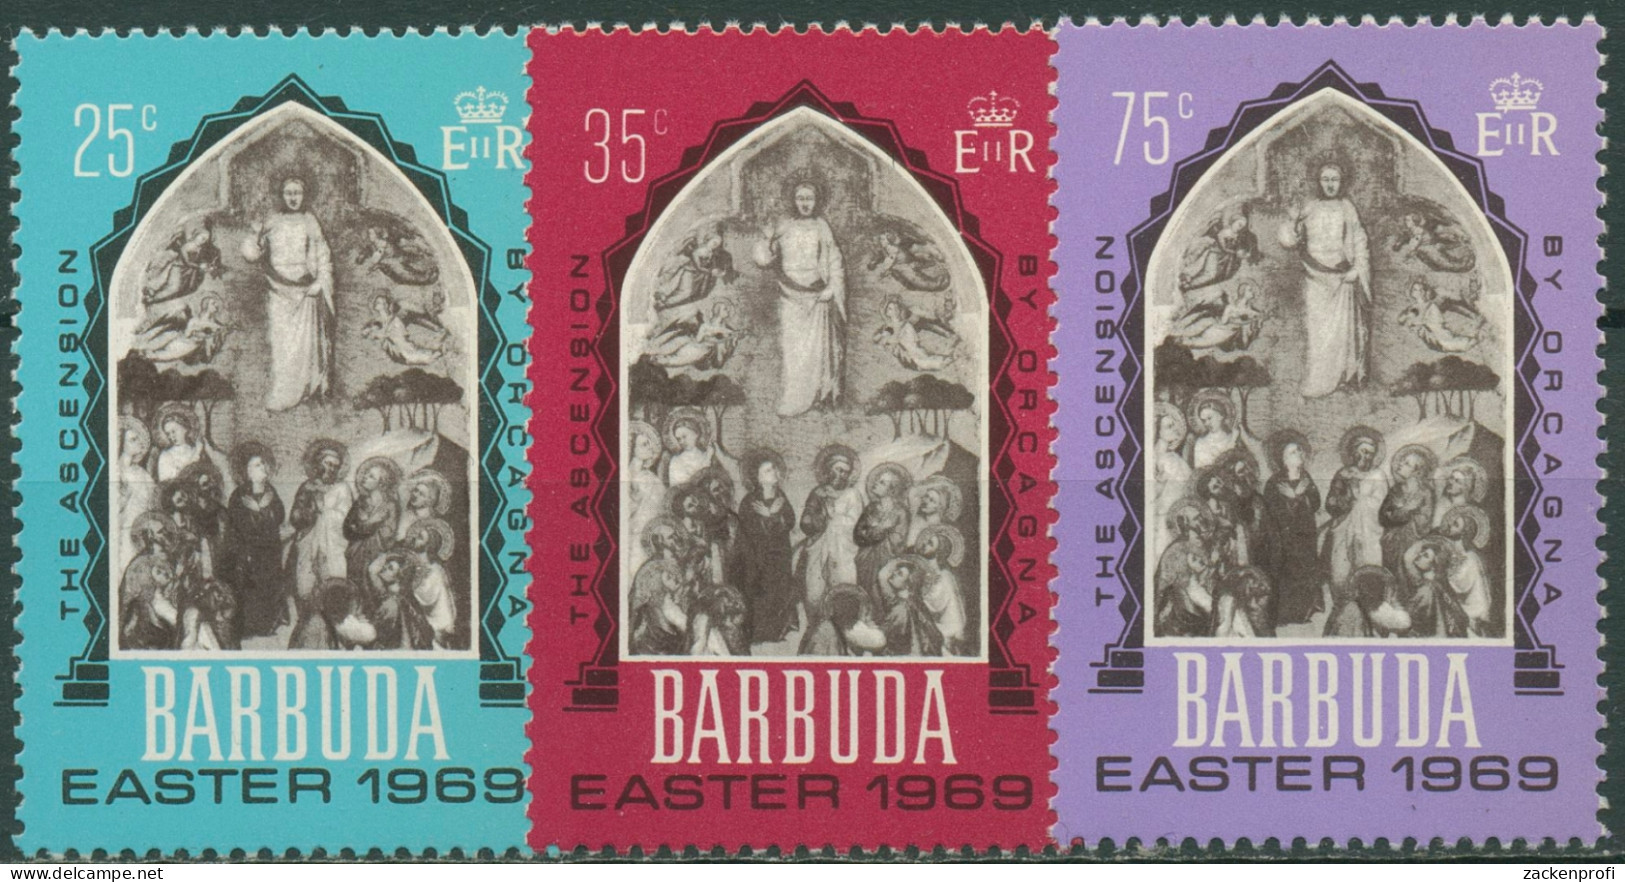 Barbuda 1969 Ostern Himmelfahrt Gemälde 32/34 Postfrisch - Barbuda (...-1981)